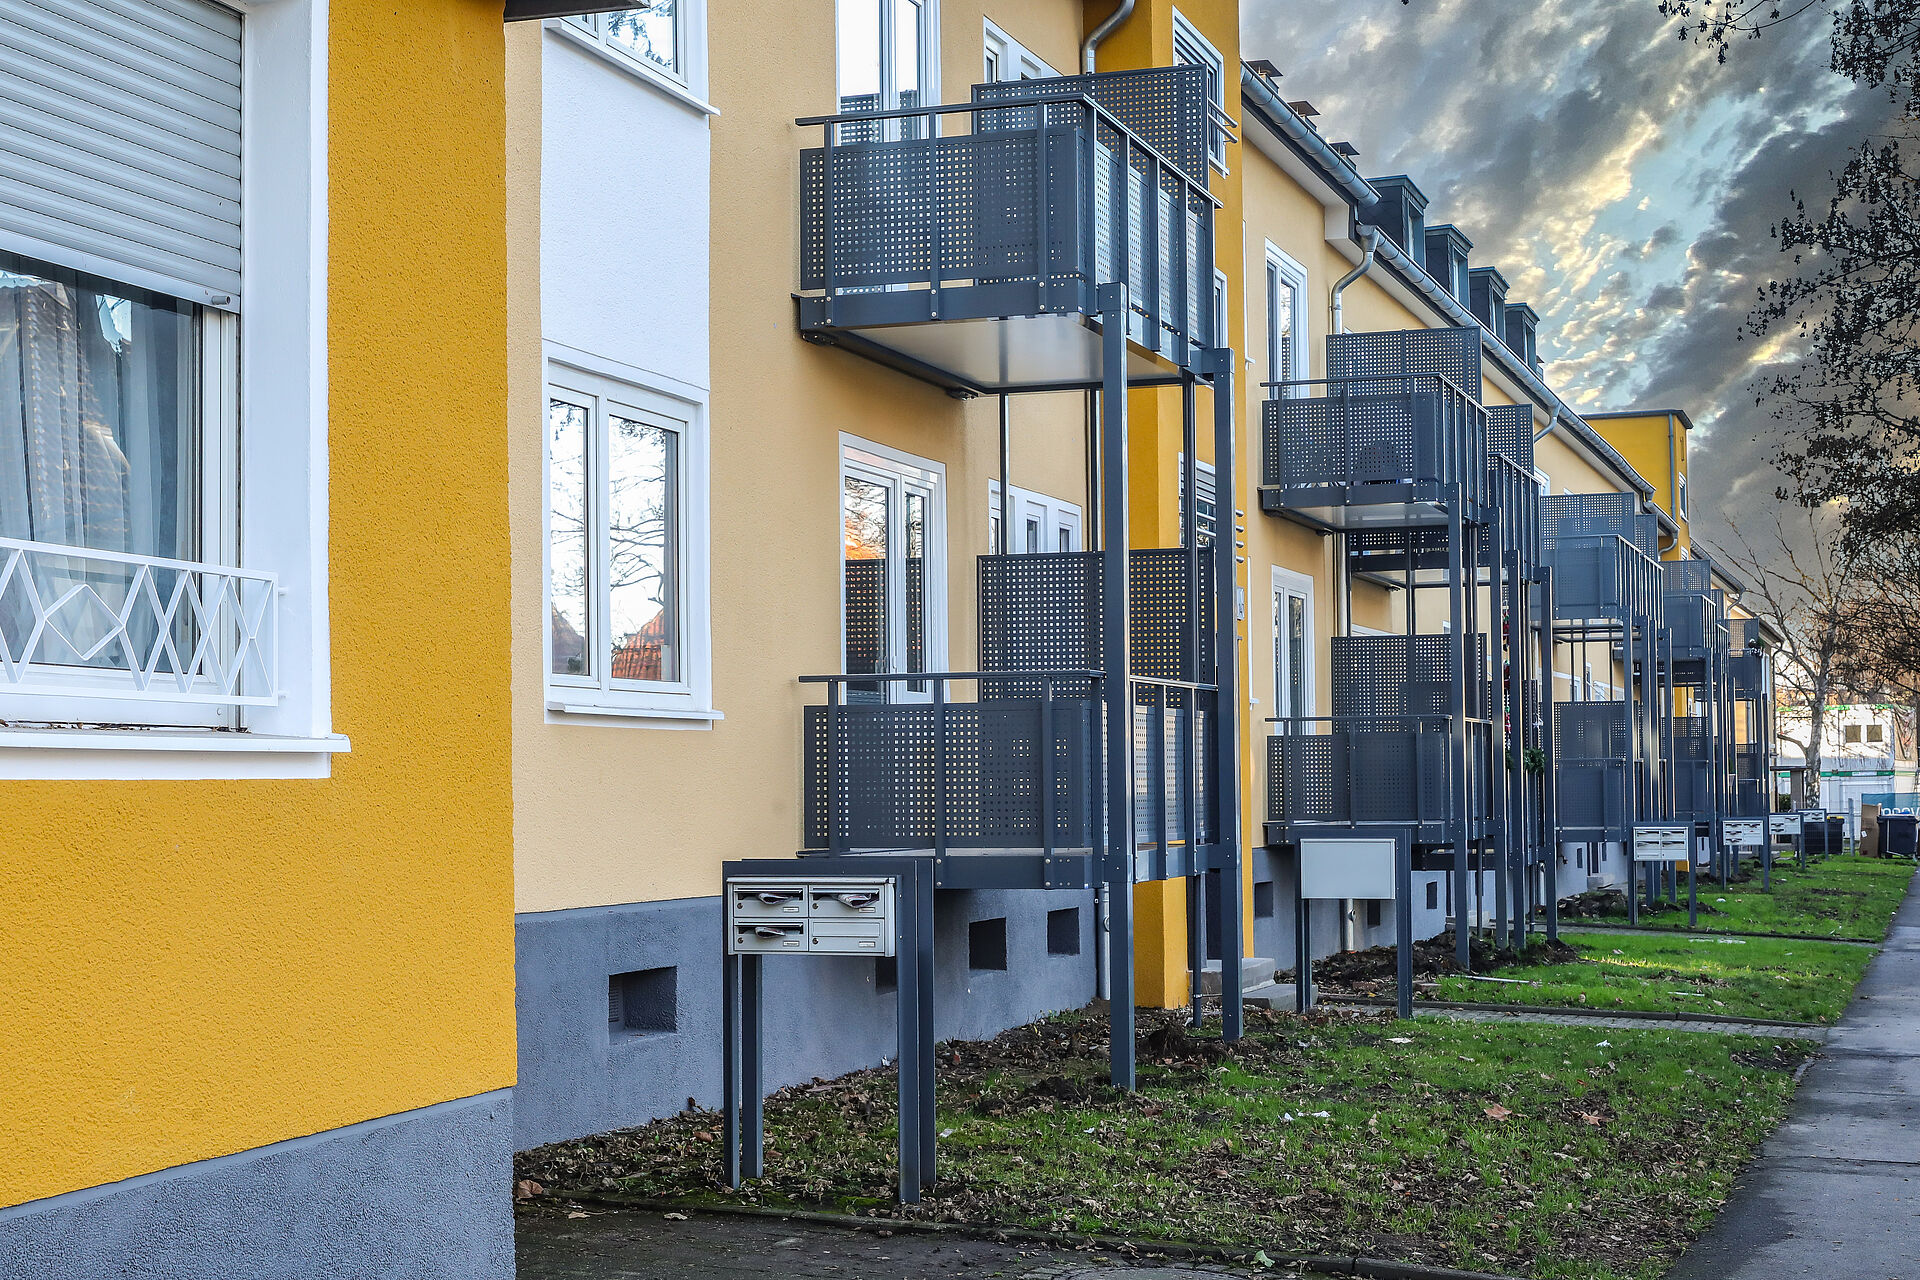 Frisch gestrichene gelbe Mehrfamilienhäuser mit neu angebauten Balkonen